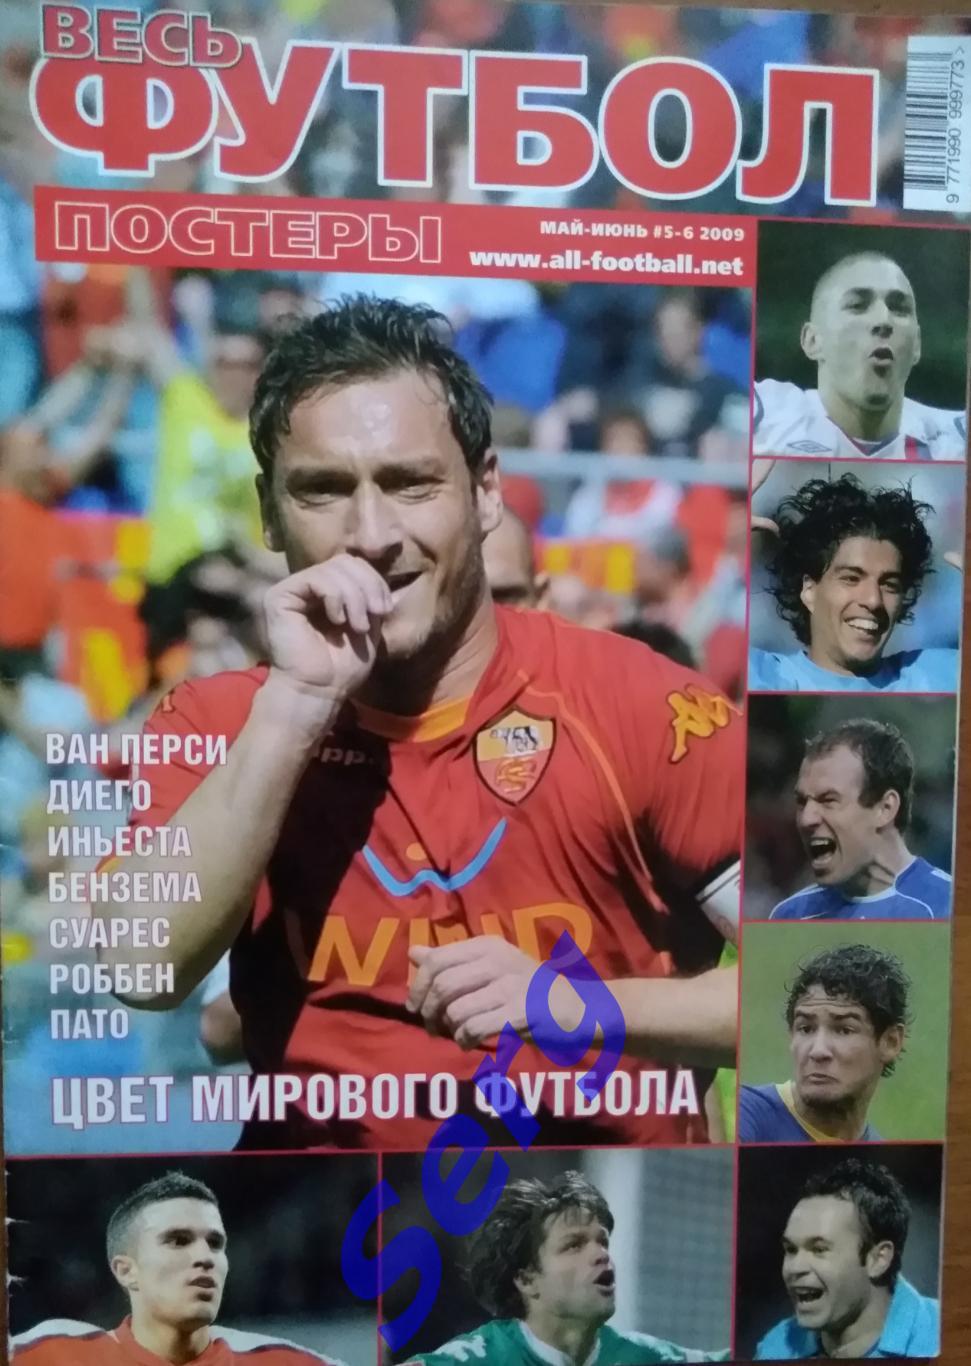 Журнал Весь футбол. Постеры №5-6 май-июнь 2009 год